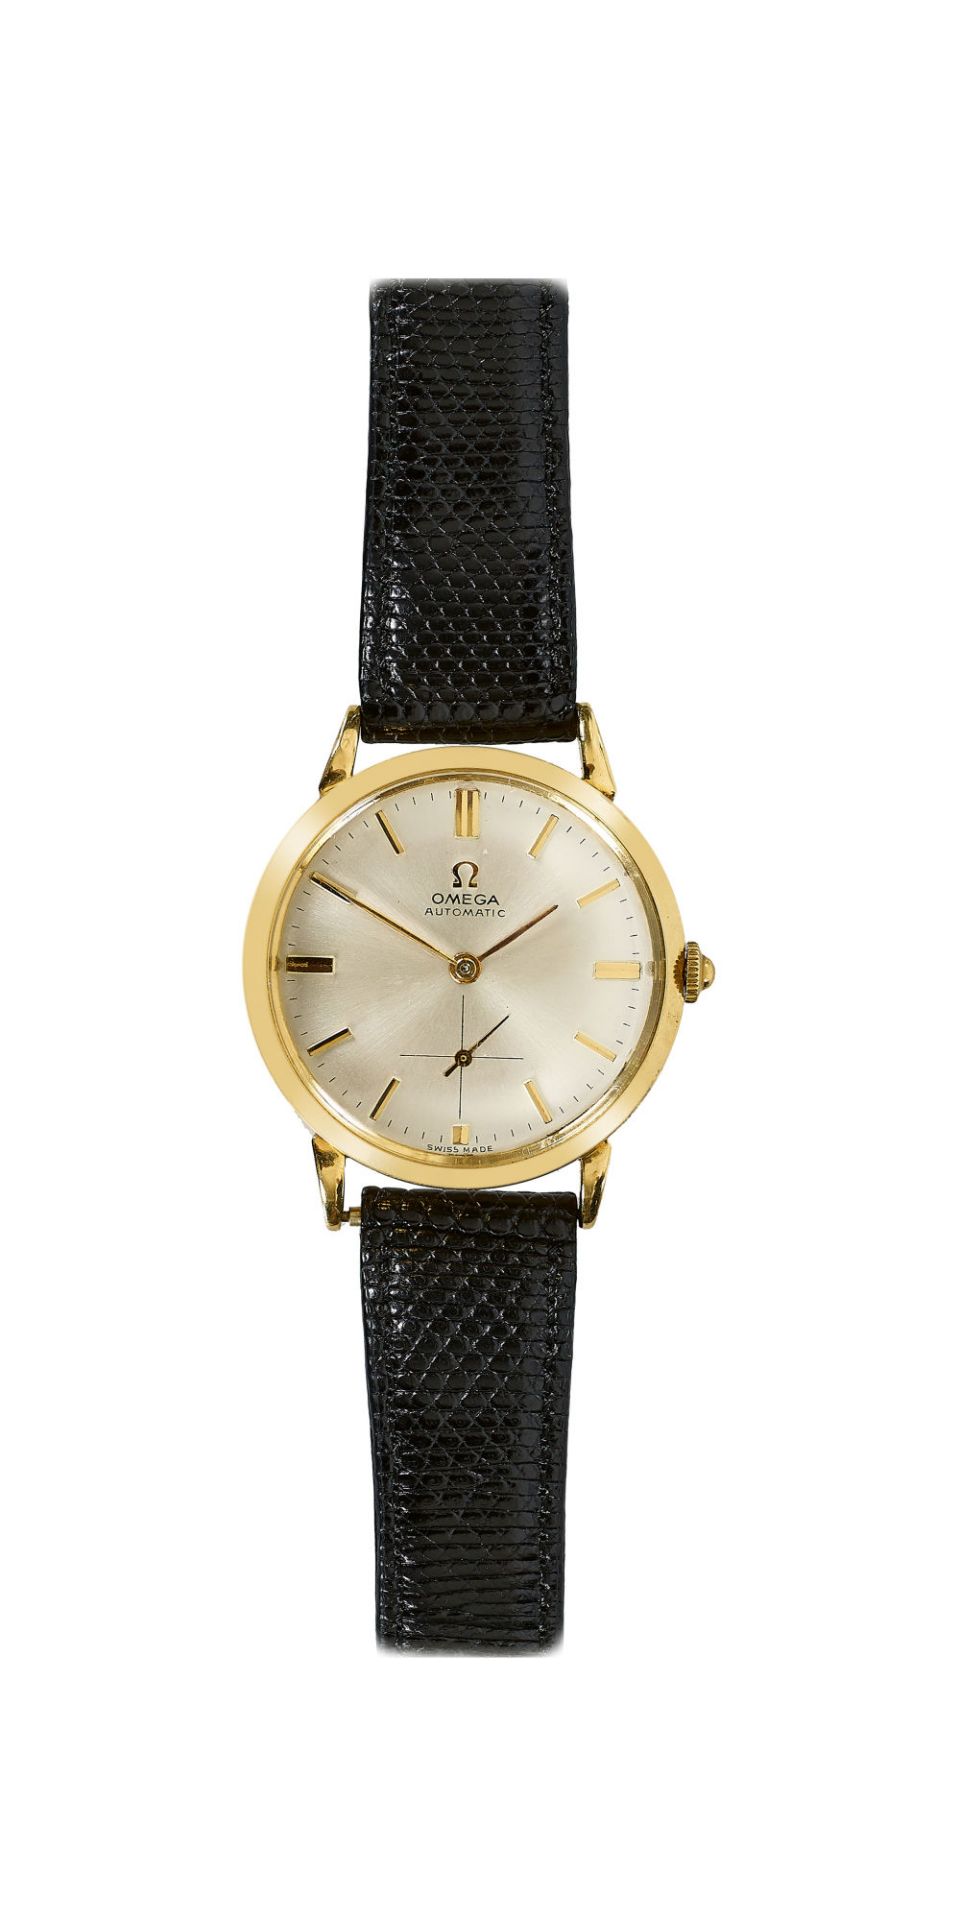 OMEGA: Vintage-Herrenarmbanduhr. / Omega, Vintage-gentleman's wristwatch.